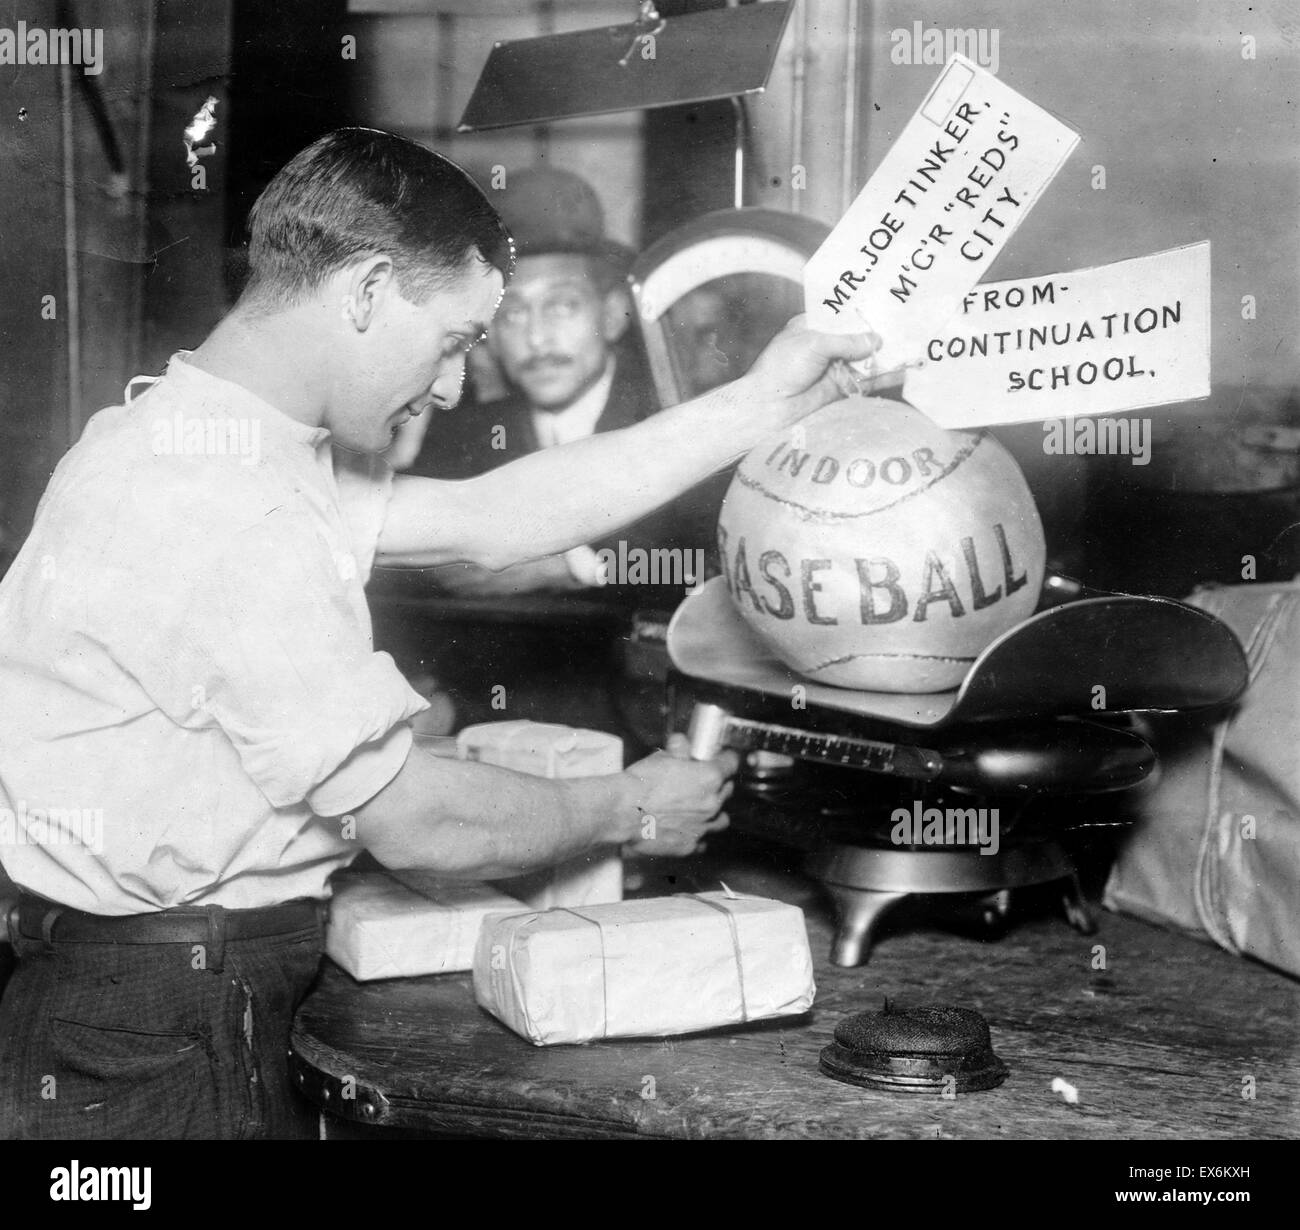 Medizinball wird von amerikanischen Post Office Mitarbeiter 1910 gewogen. Einen Medizinball (auch bekannt als einen Gymnastikball, ein med Ball oder ein Fitness-Ball). Datiert 1910 Stockfoto